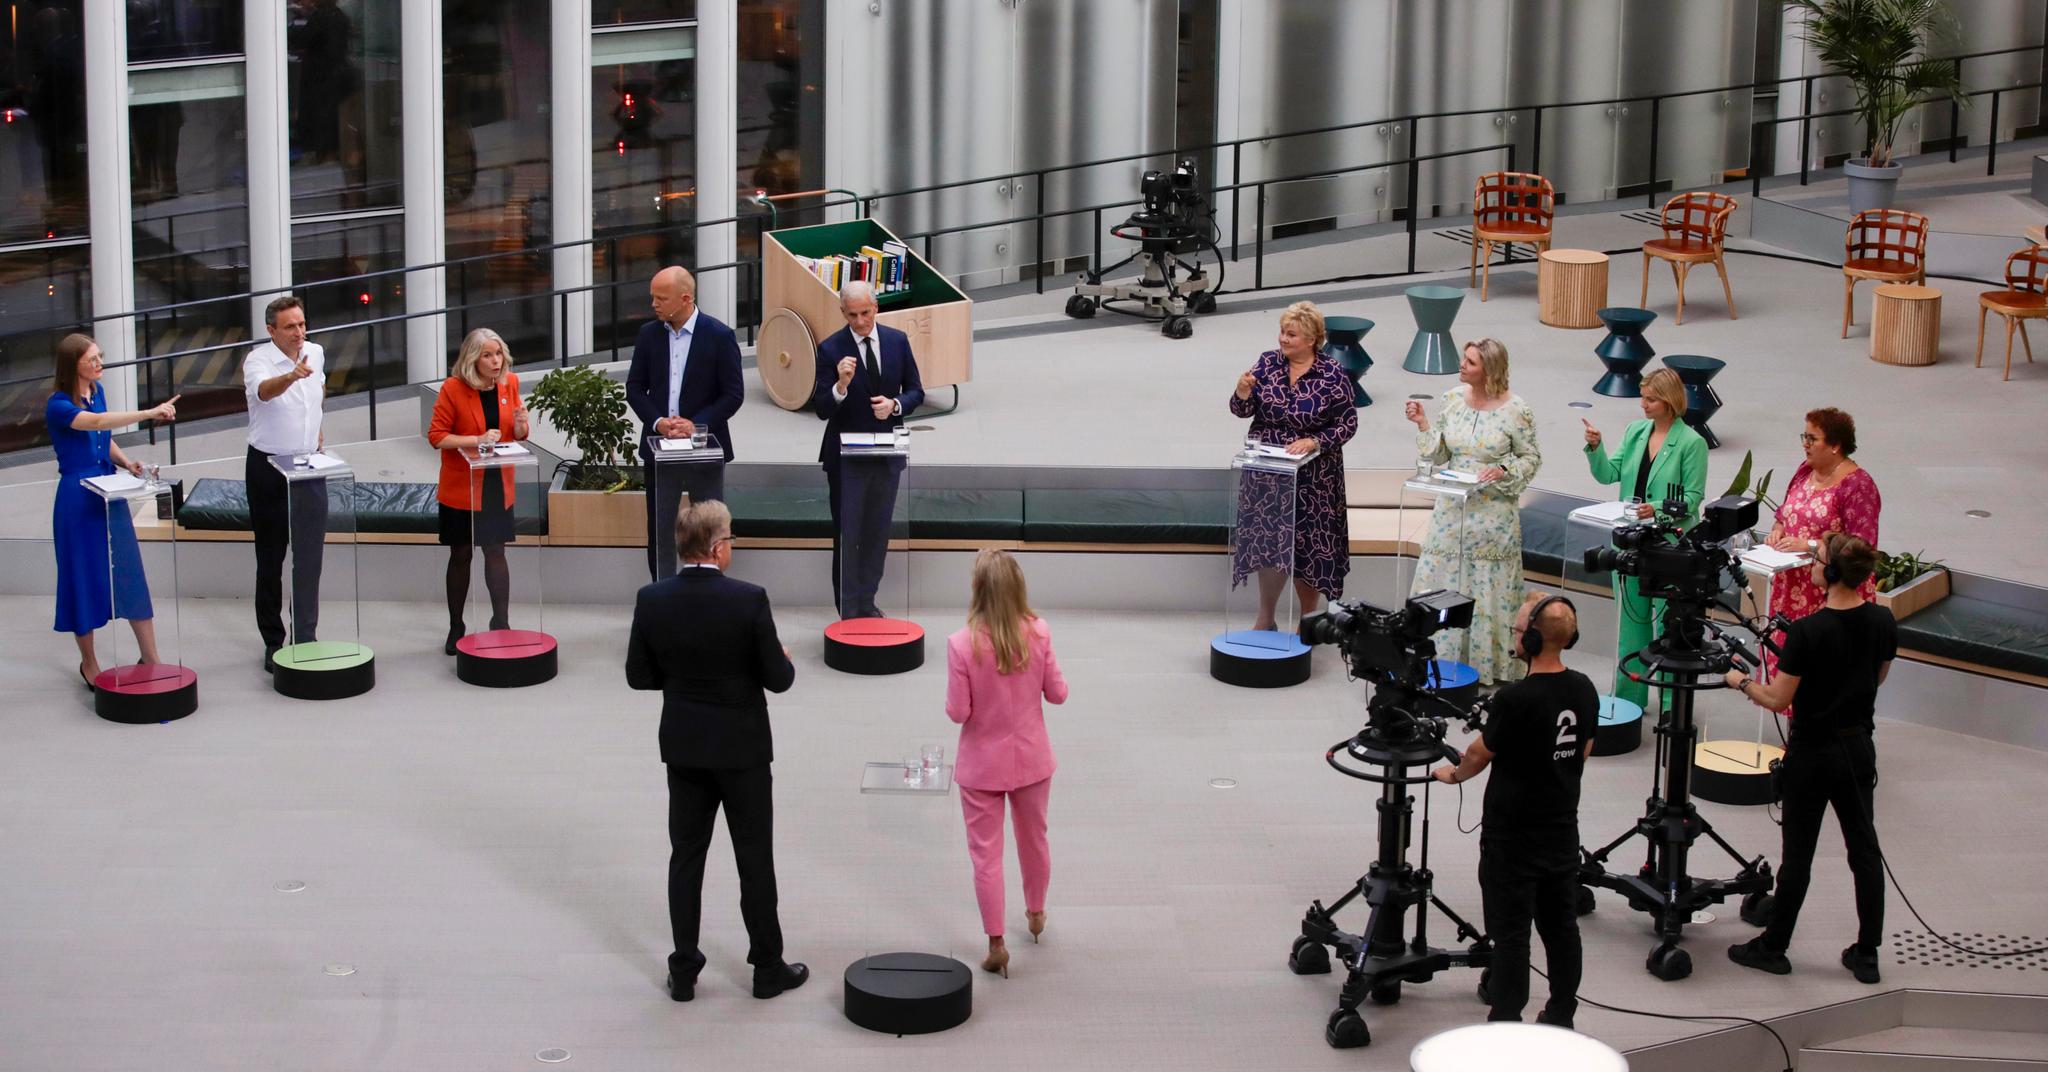 TV2s partilederdebatt ble sendt fra Deichman i Bjørvika i Oslo.